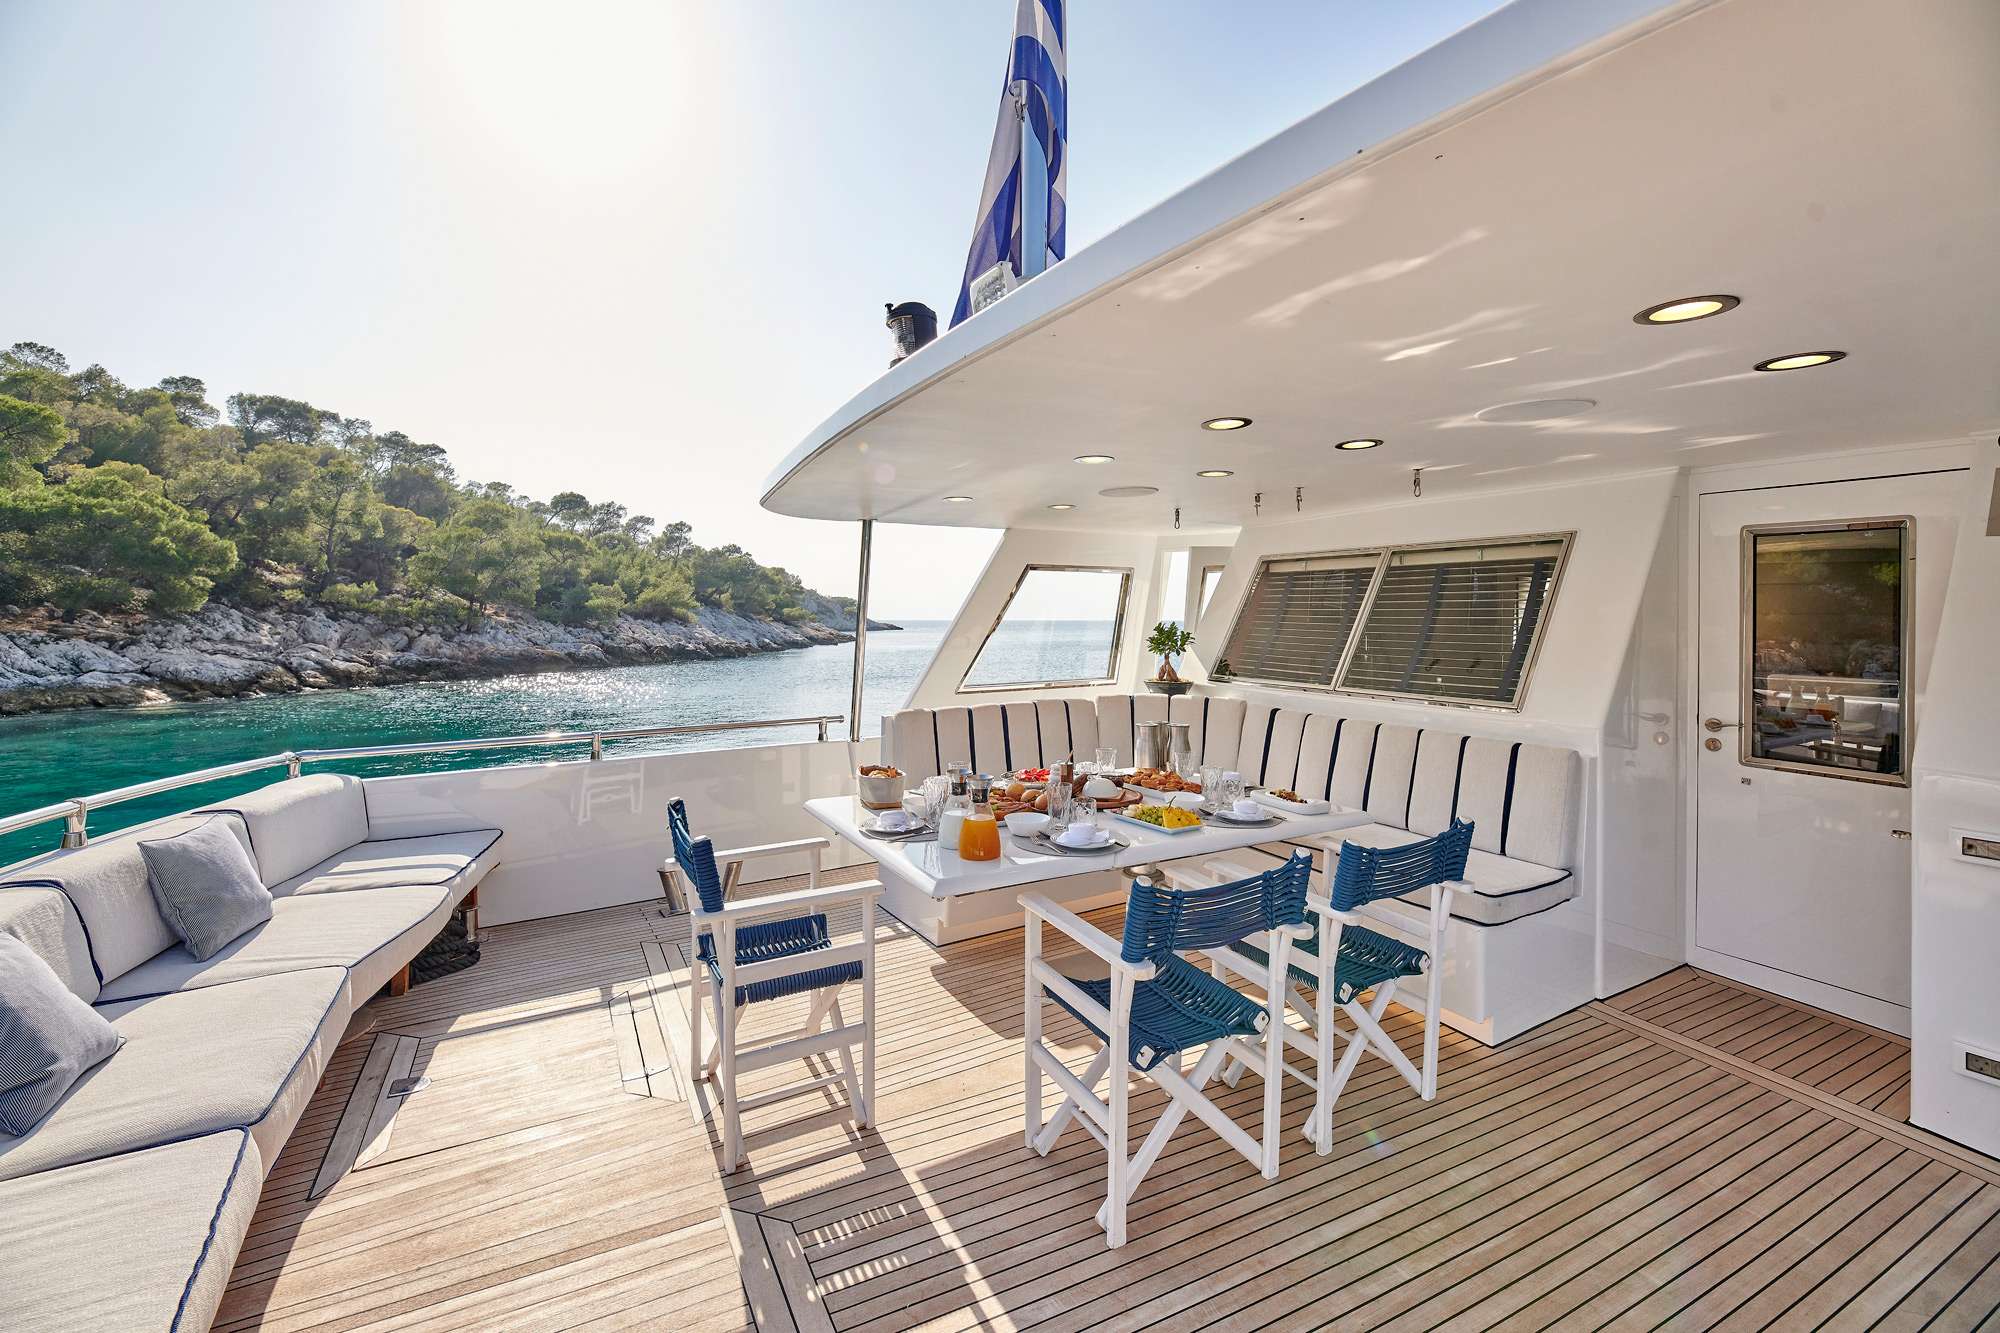 ALAYA - Yacht Charter Palaio Faliro & Boat hire in Greece 4